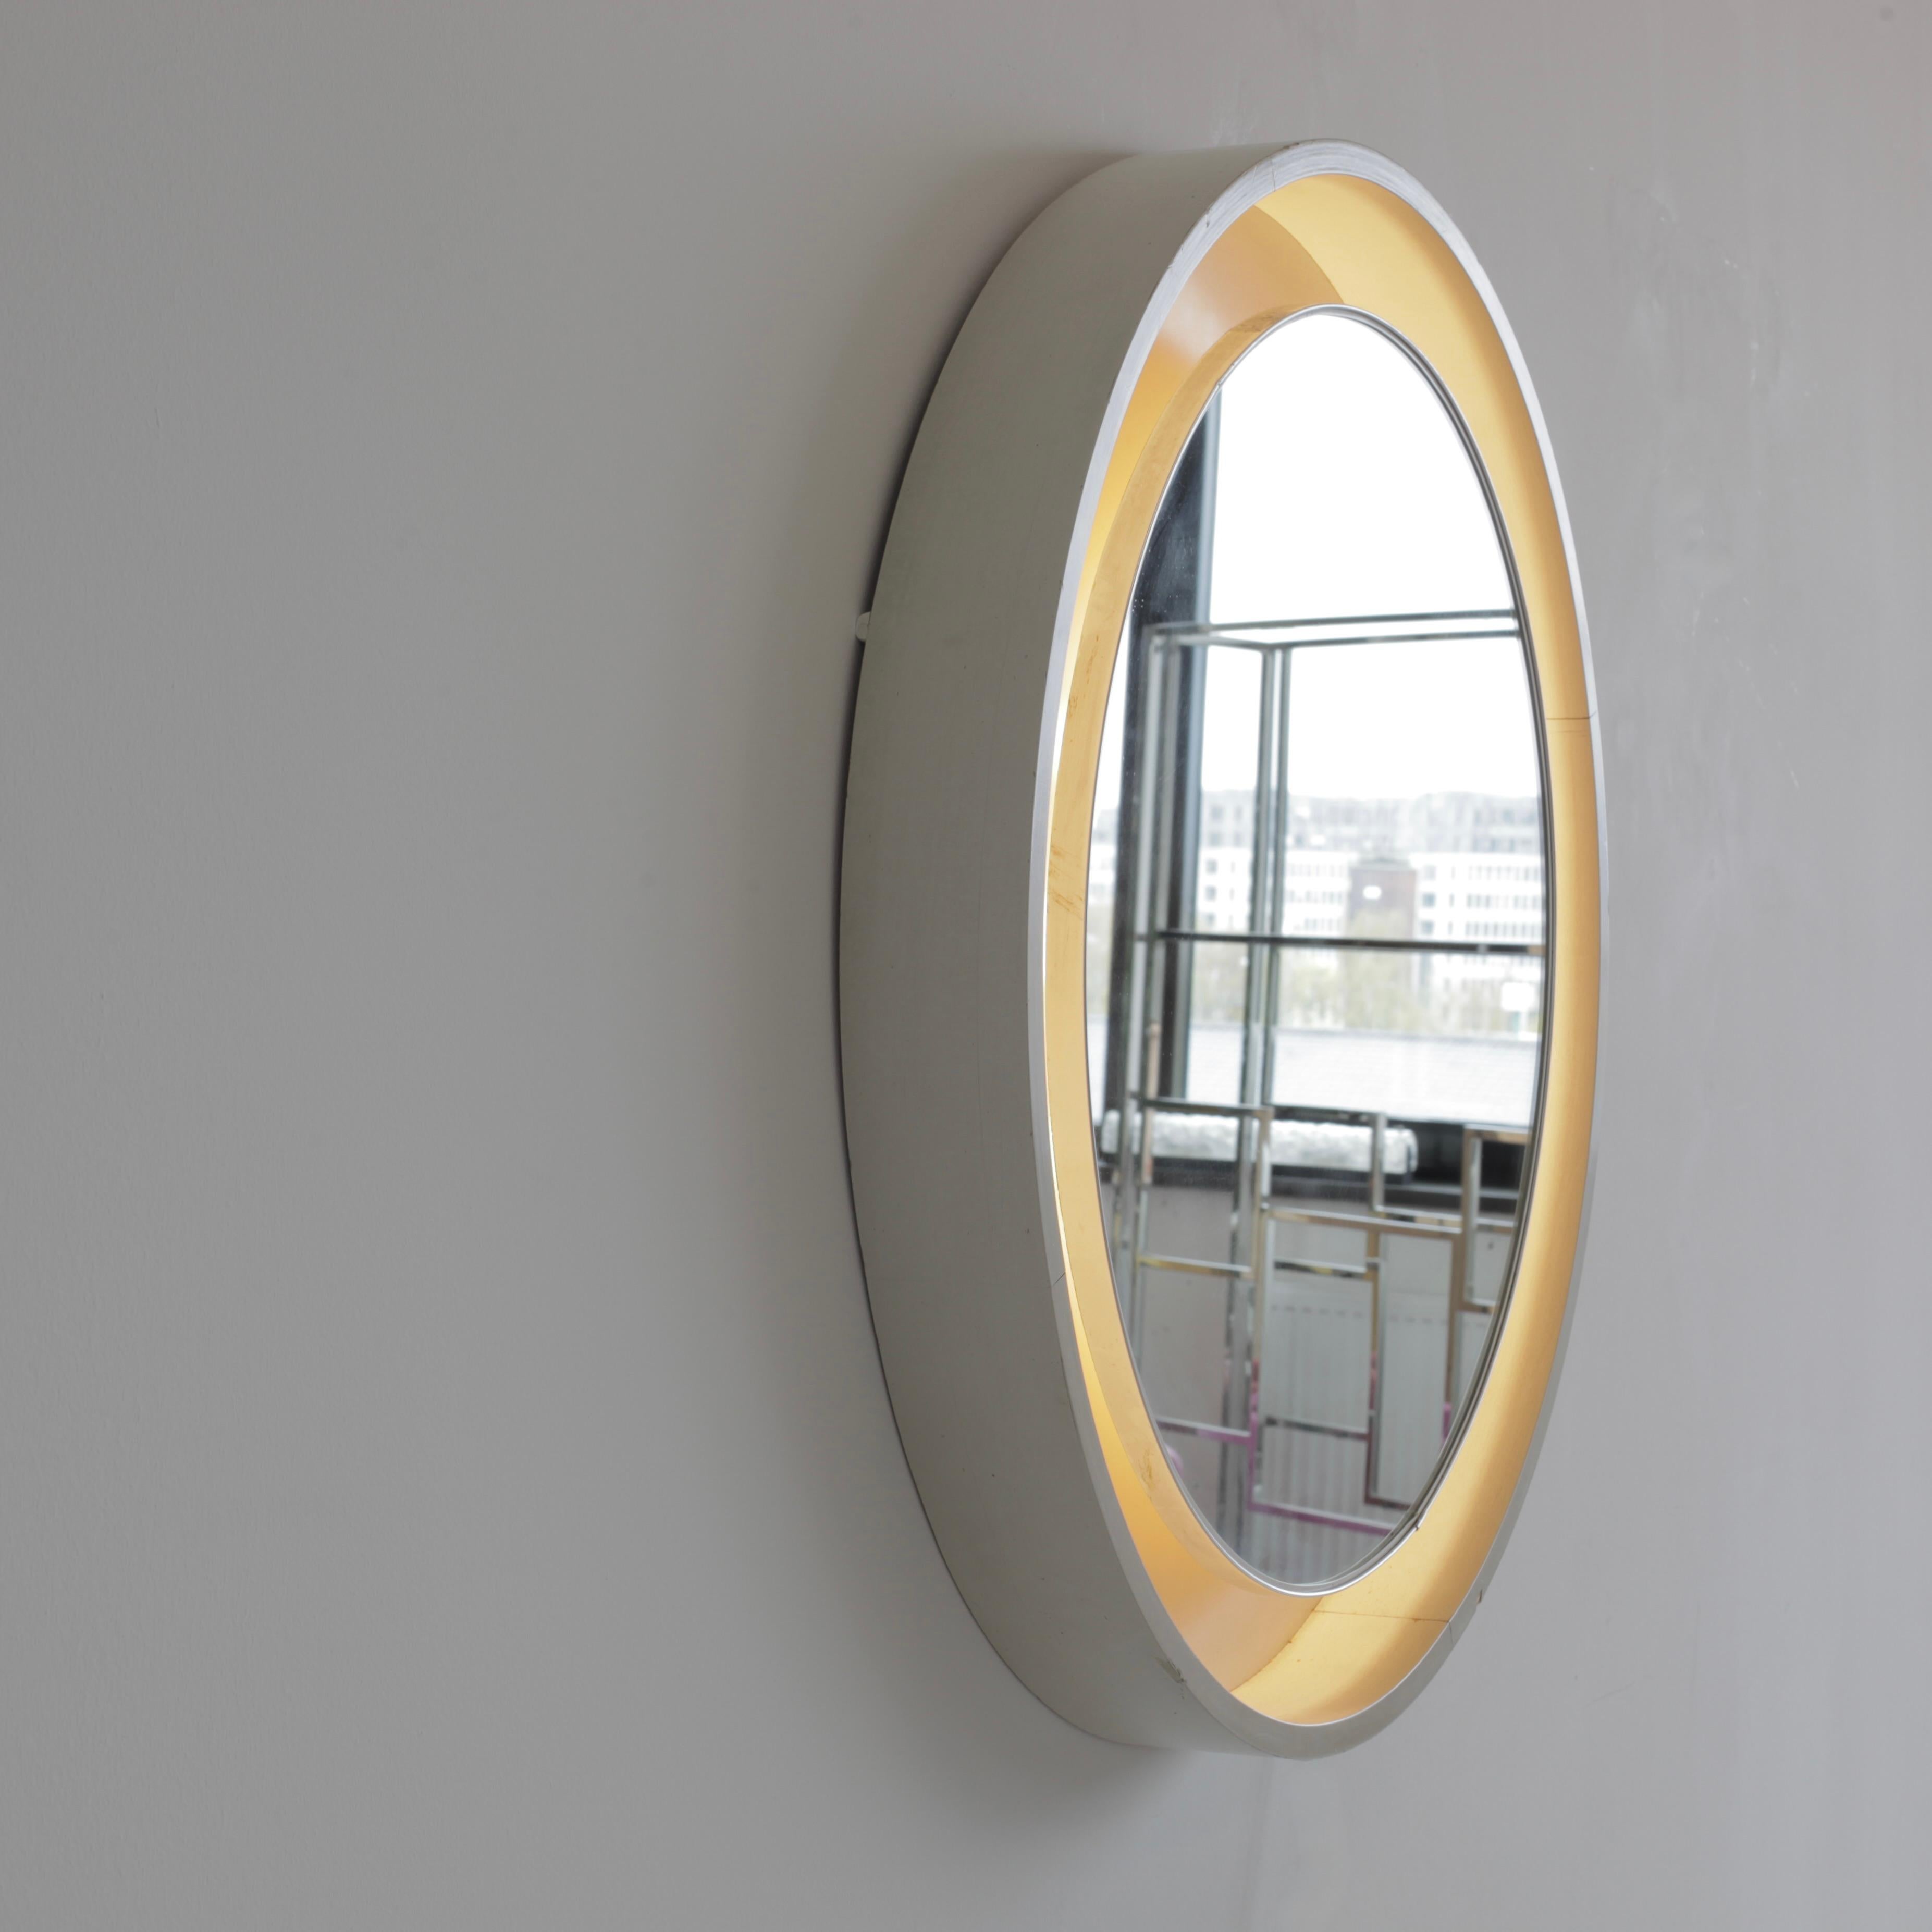 Großer Spiegel mit Holzrahmen. Italien, 1970er Jahre.

Großer beleuchteter Spiegel mit 8 Lichtfassungen, versteckt hinter dem Spiegelglas. Bemaltes und geschwungenes Holz in hellgrau mit Spiegeleinsatz und Hintergrundbeleuchtung.